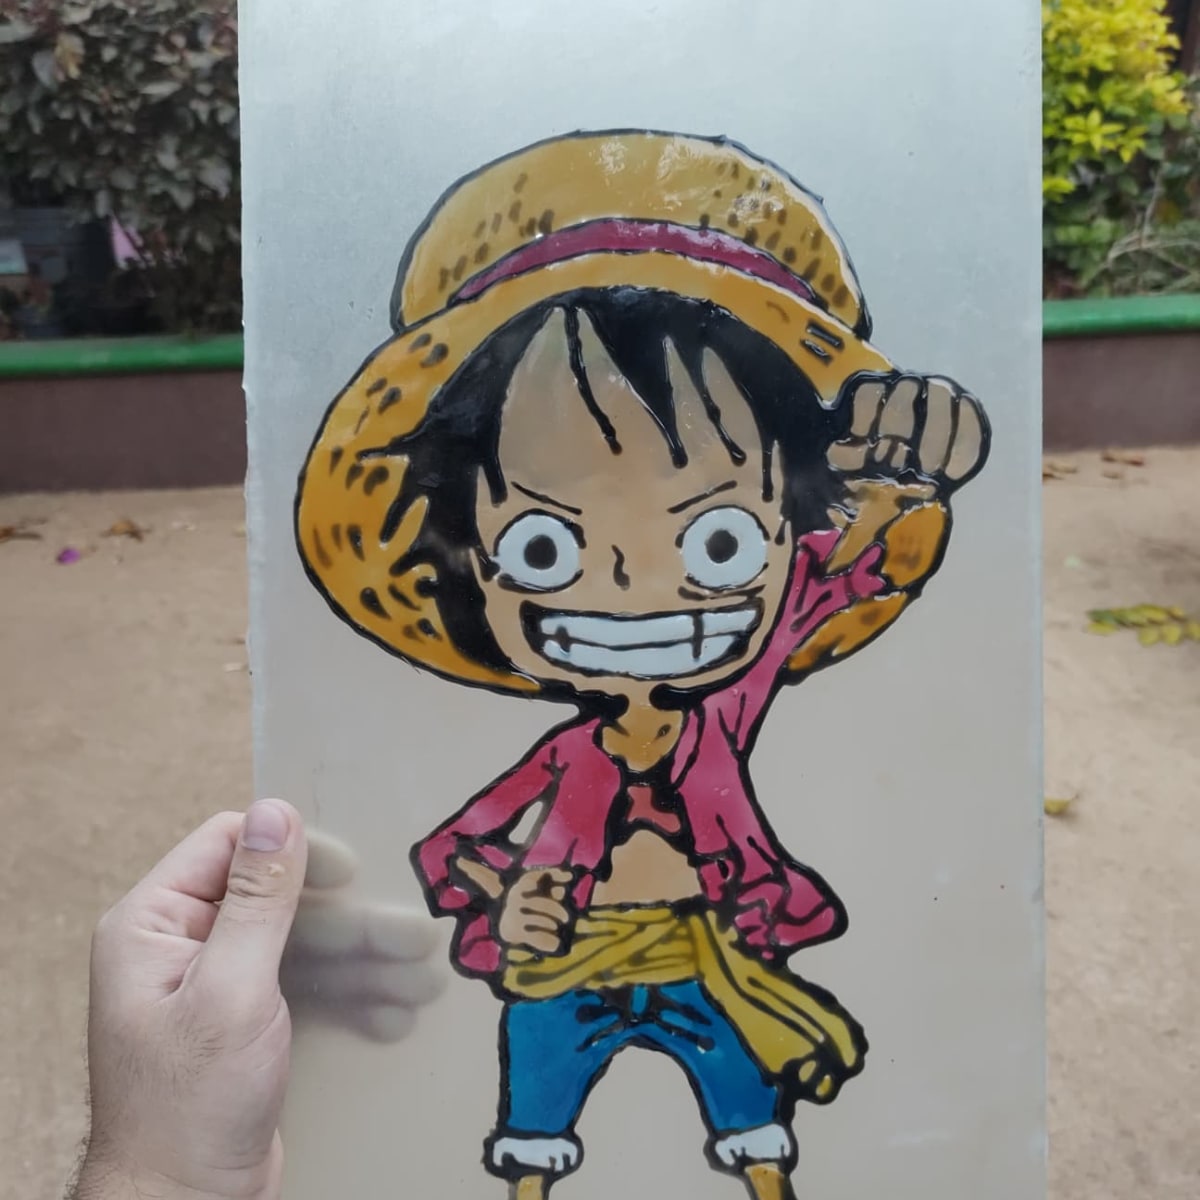 Trong nhiều năm qua, Luffy là một trong những nhân vật anime/manga được yêu thích nhất và được vẽ nhiều nhất. Hình vẽ Luffy chibi này là một trong những bức tranh đáng yêu nhất và sáng tạo nhất về anh chàng hải tặc này mà bạn có thể tìm thấy. Hãy xem nó và cảm nhận sự đáng yêu của Luffy.